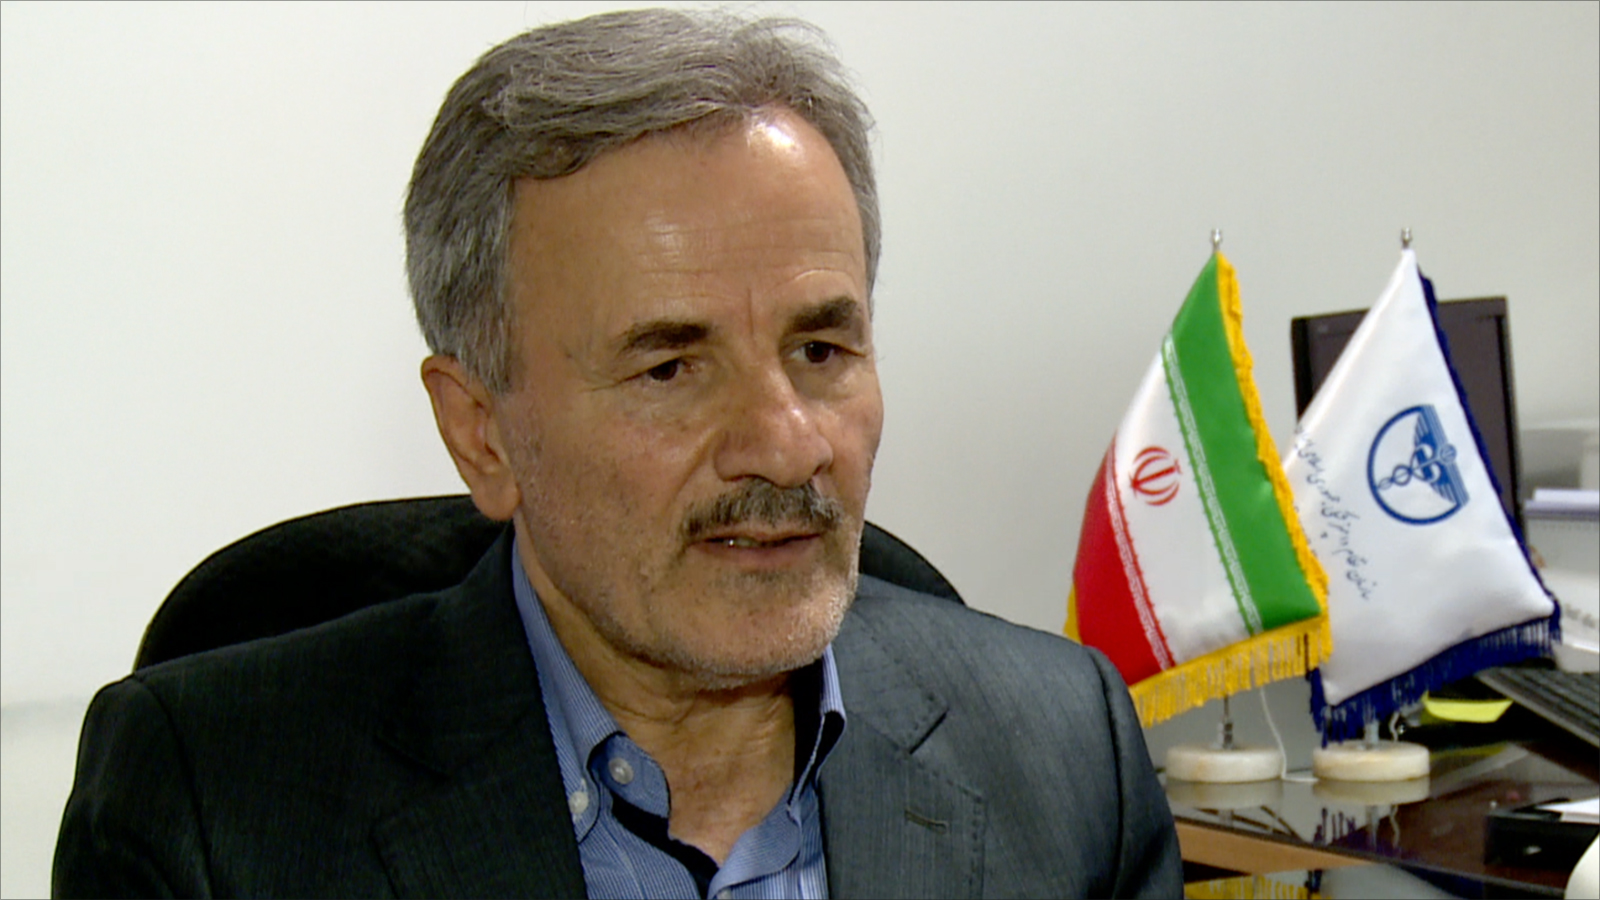 أنصاري: تصريحات المسؤولين الإيرانيين والسعوديين تشير إلى أن هناك محادثات خلف الكواليس (الجزيرة)